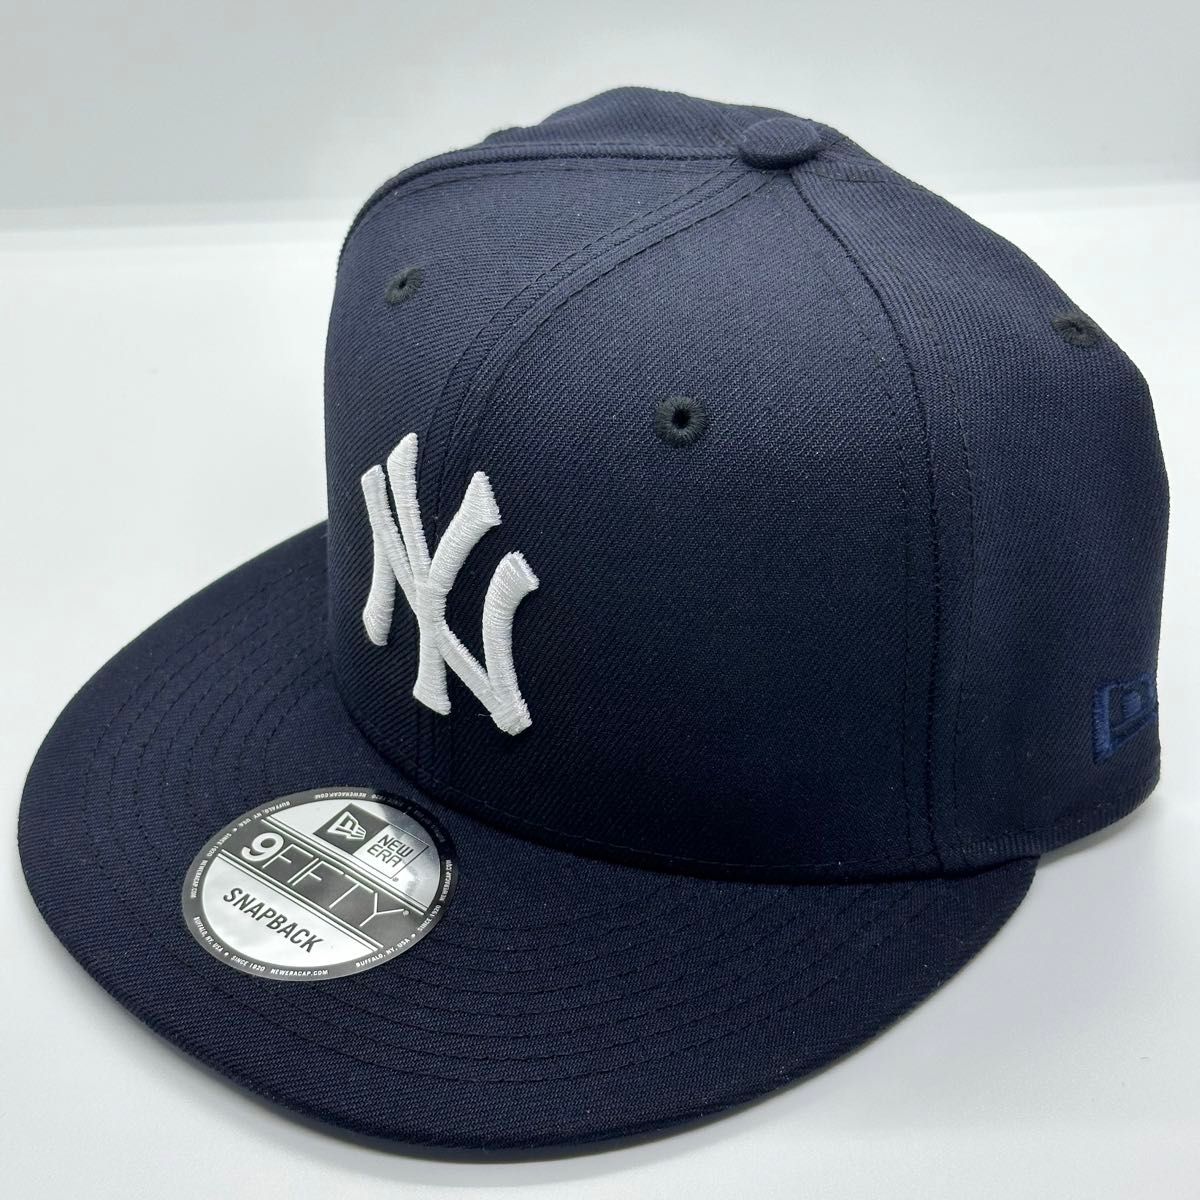 【海外限定モデル】 NEWERA 9fifty Yankees ヤンキース キャップ ネイビー ブルー スナップバック ニューエラ